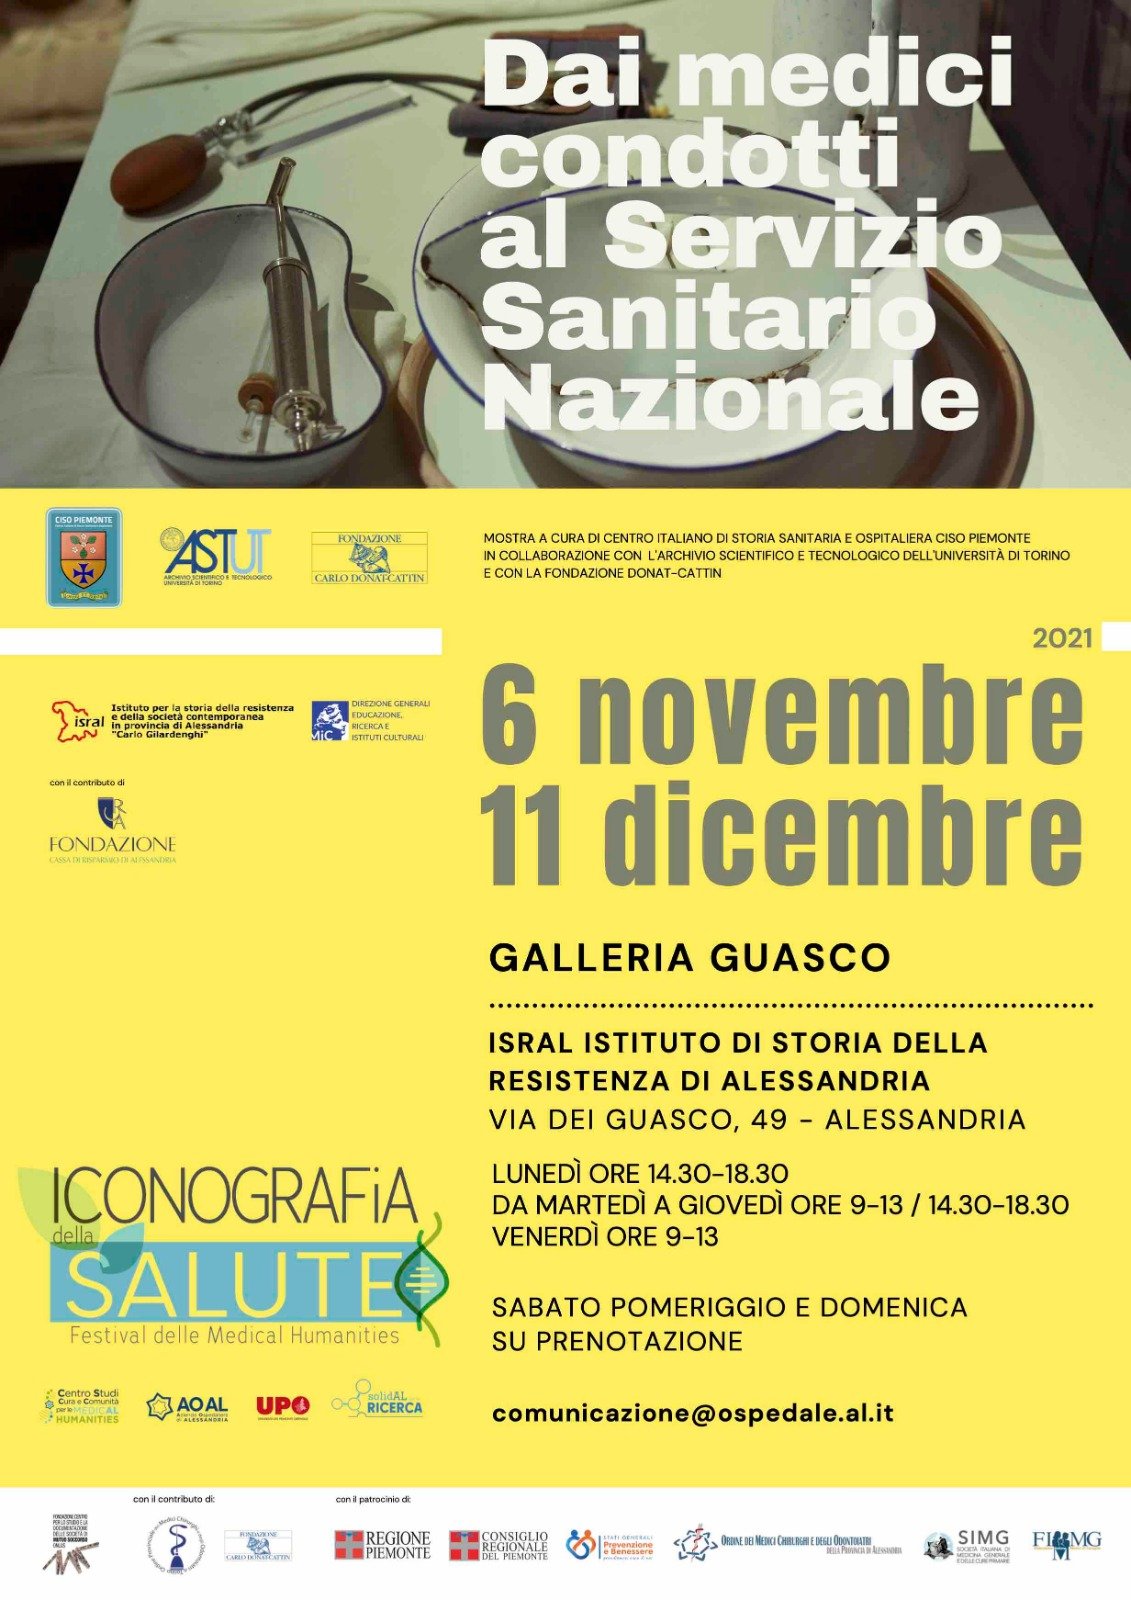 Dal 6 novembre all’11 dicembre la mostra “Dai Medici condotti al Servizio Sanitario Nazionale”